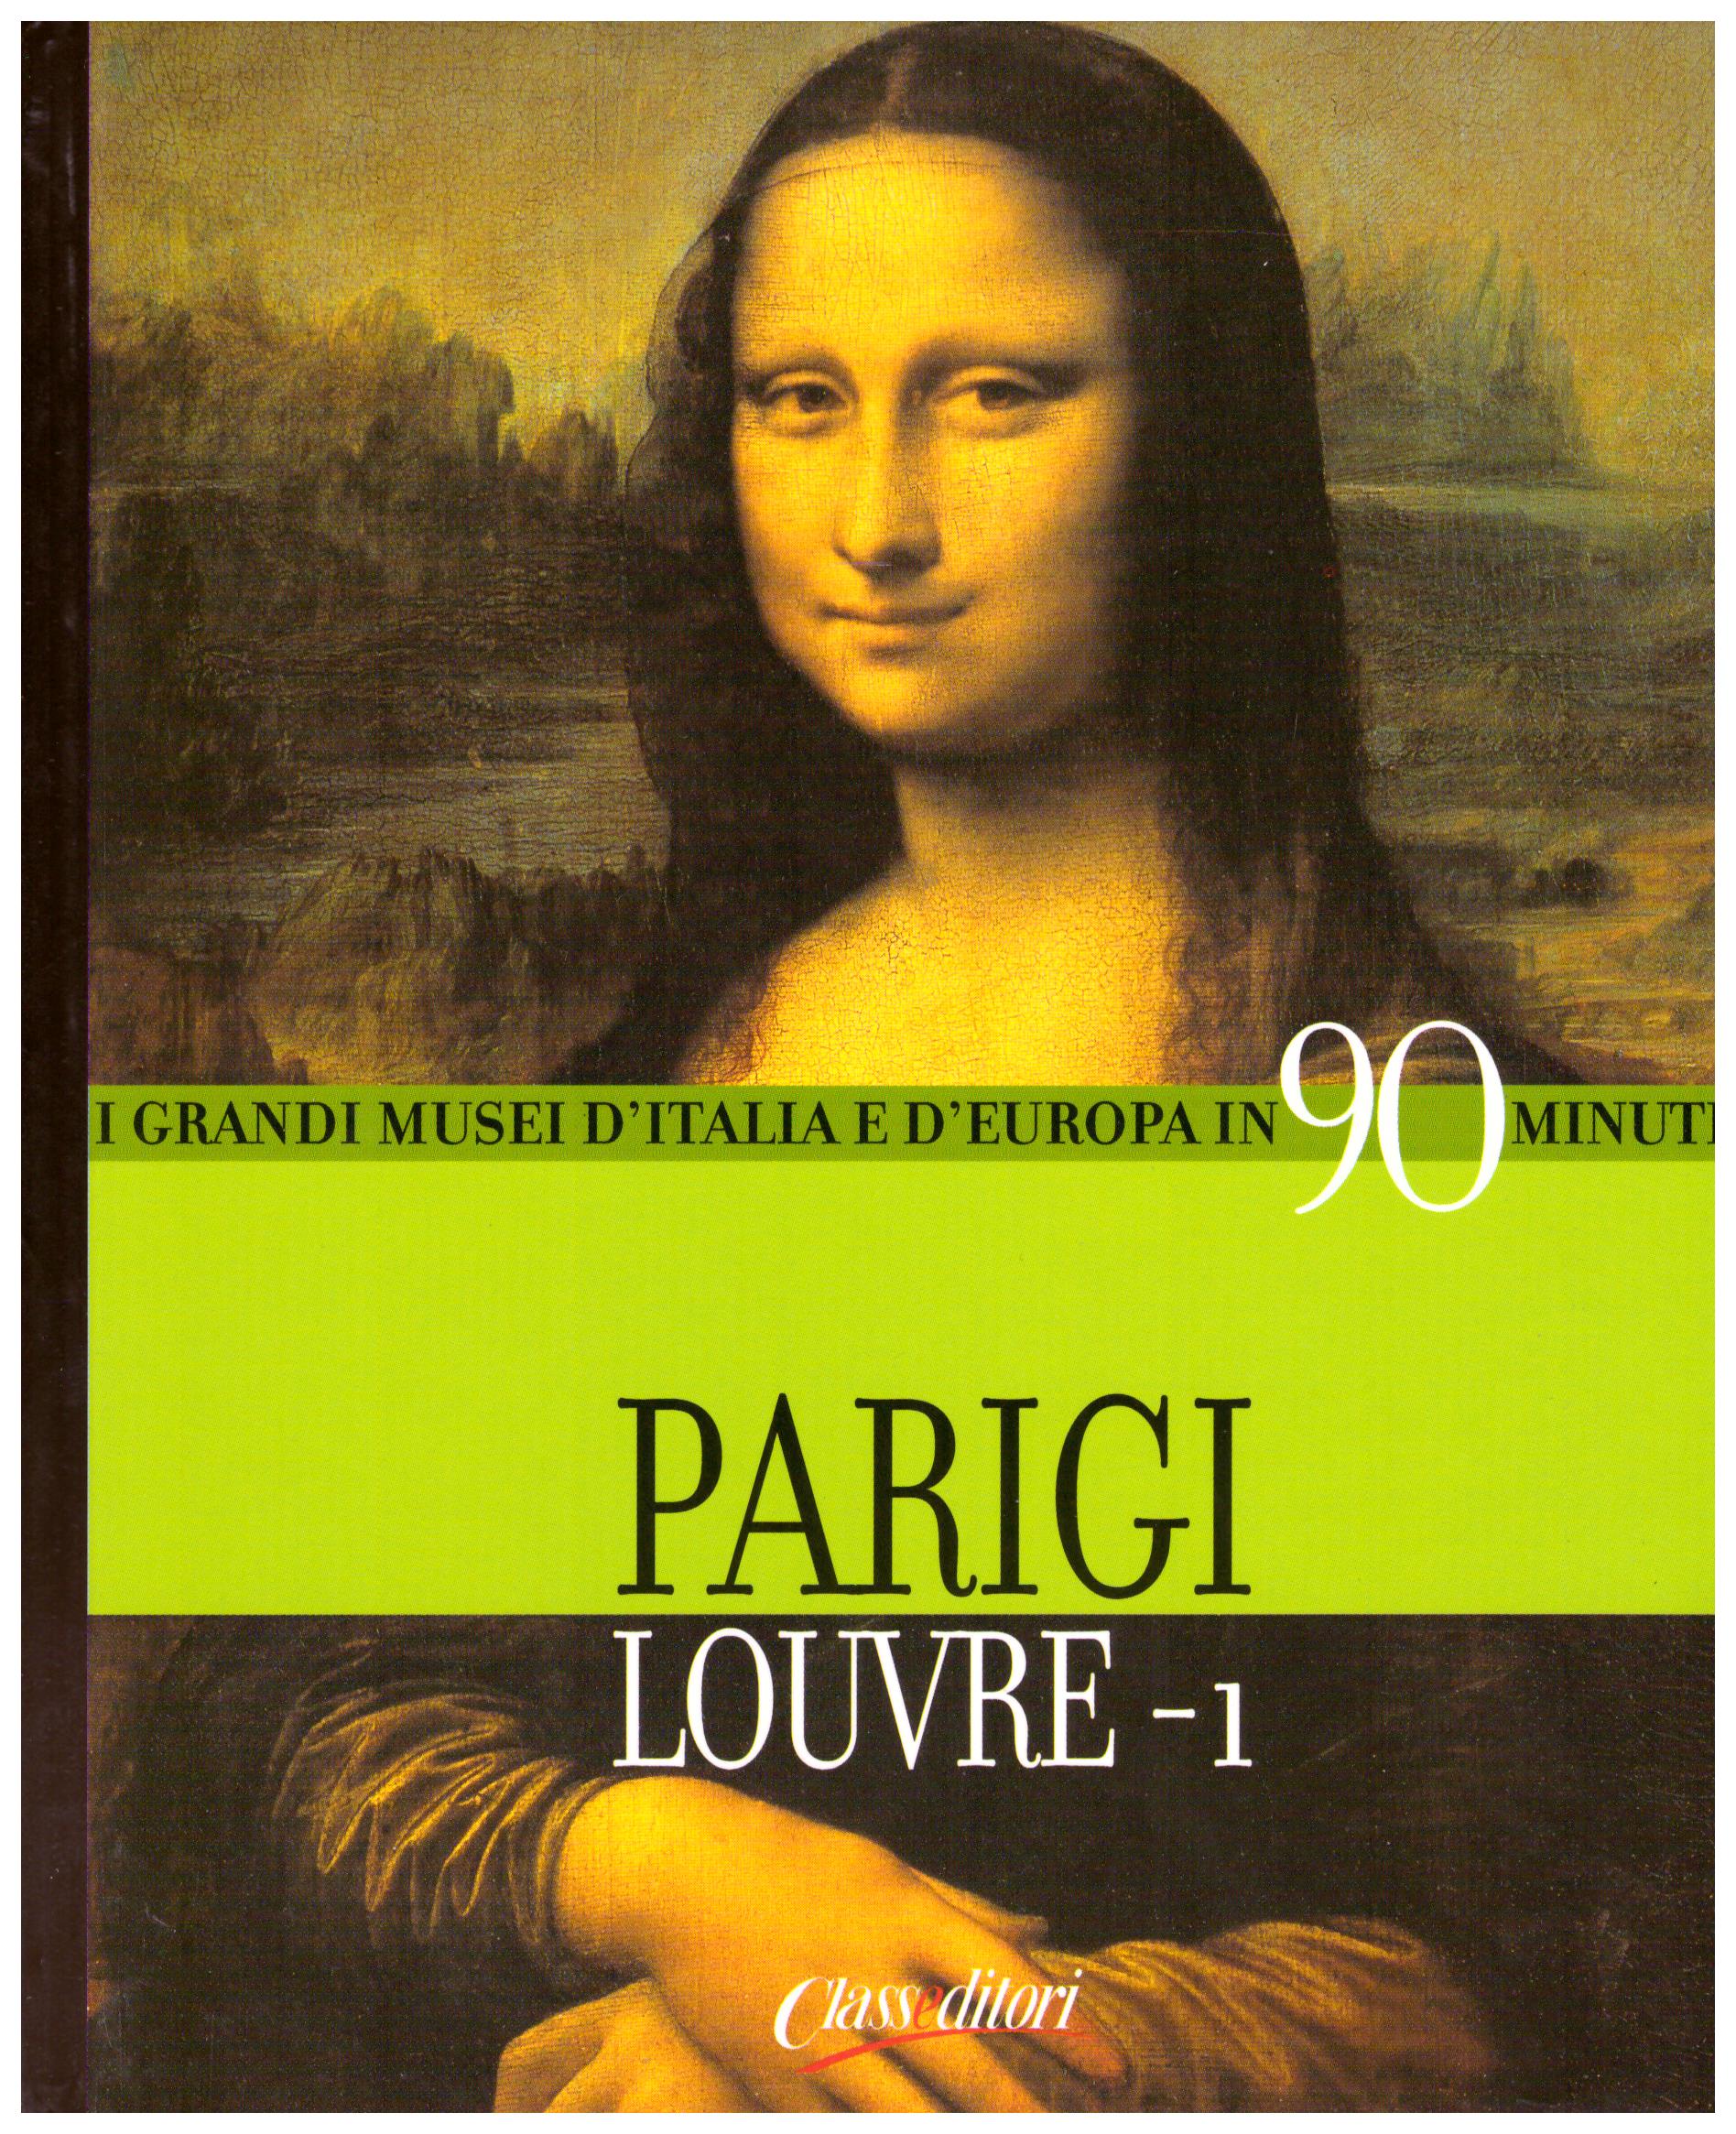 Titolo: I grandi musei d'italia e d'Europa in 90 minuti, Parigi Louvre-1  Autore : AA.VV.  Editore: class editori